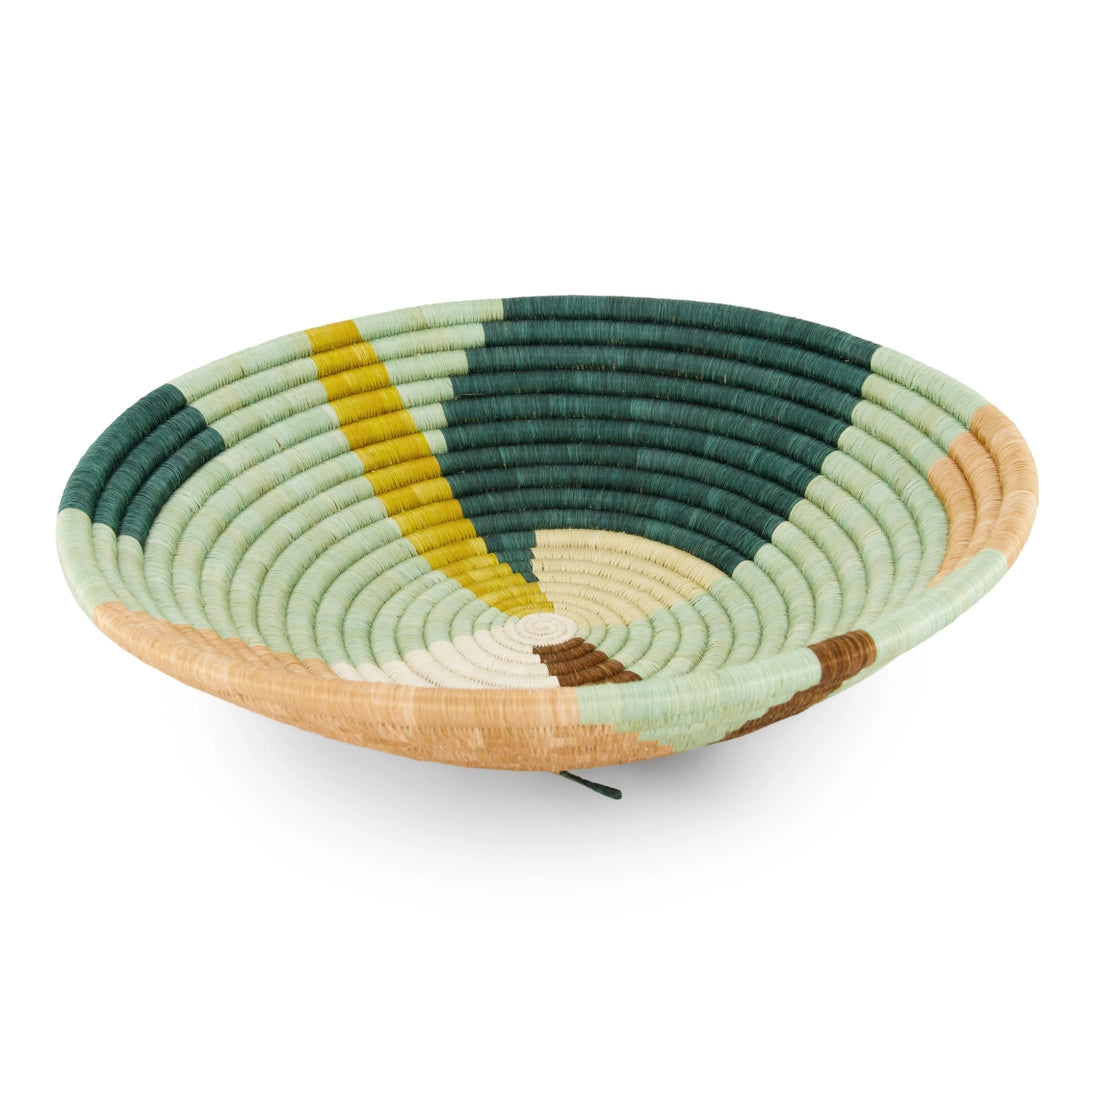 Abstract Seafoam Round Basket, 14" - Saltern